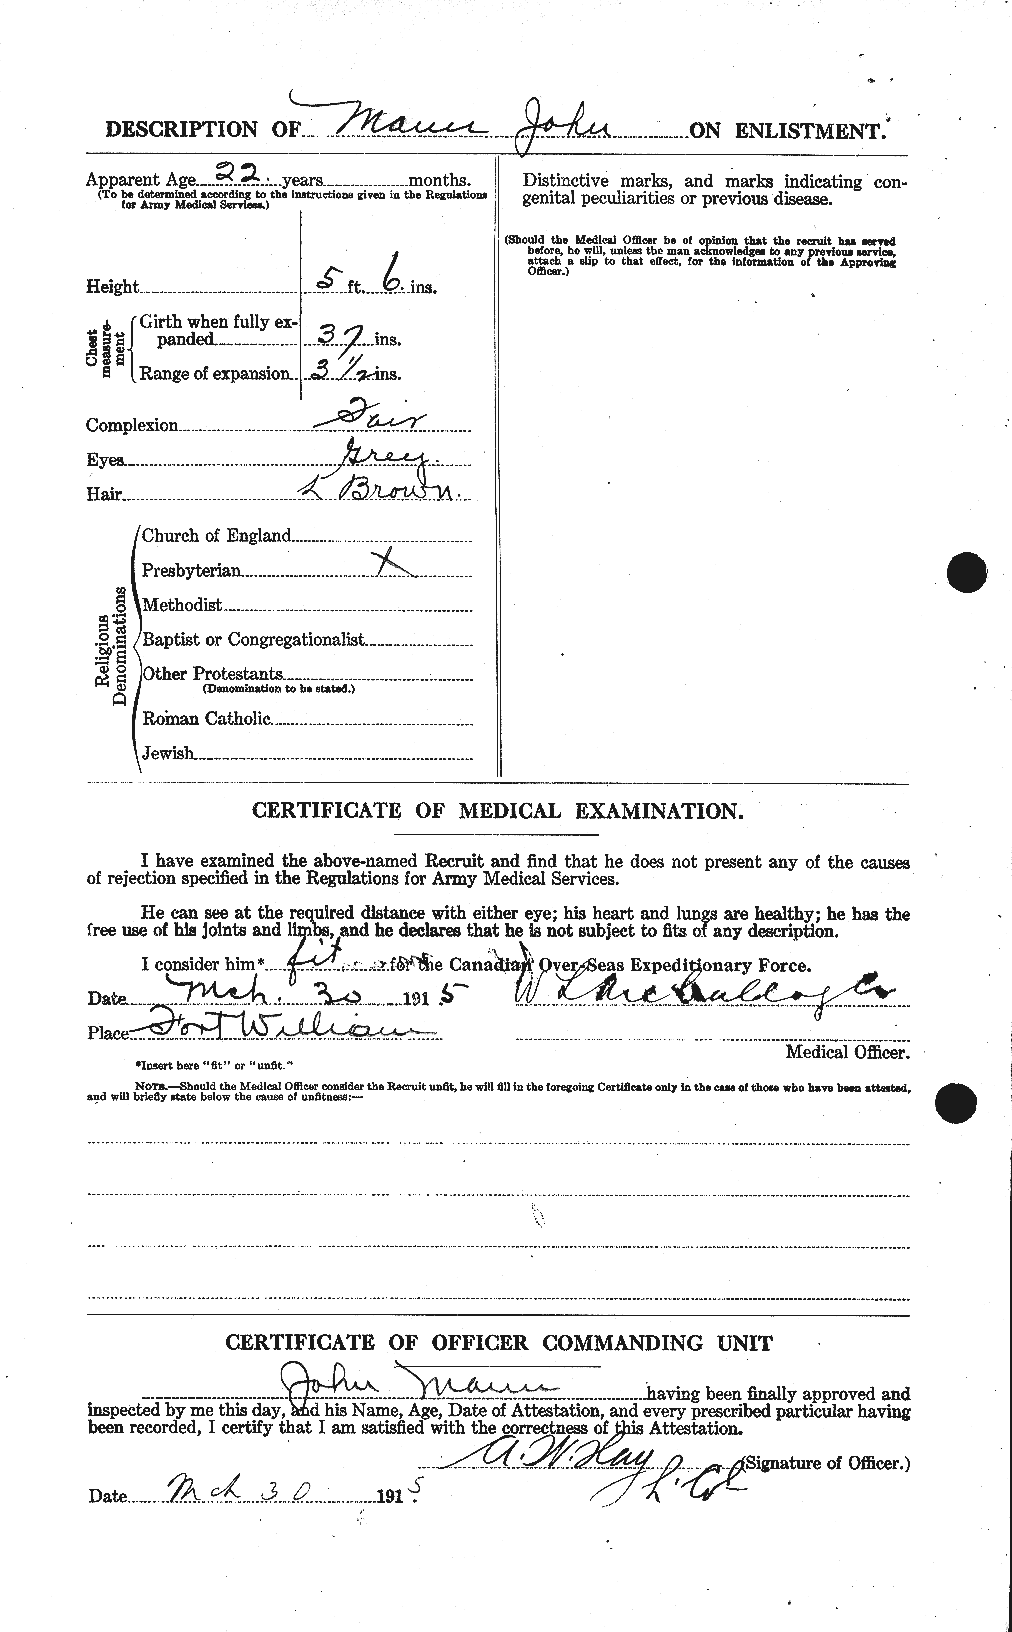 Dossiers du Personnel de la Première Guerre mondiale - CEC 477225b